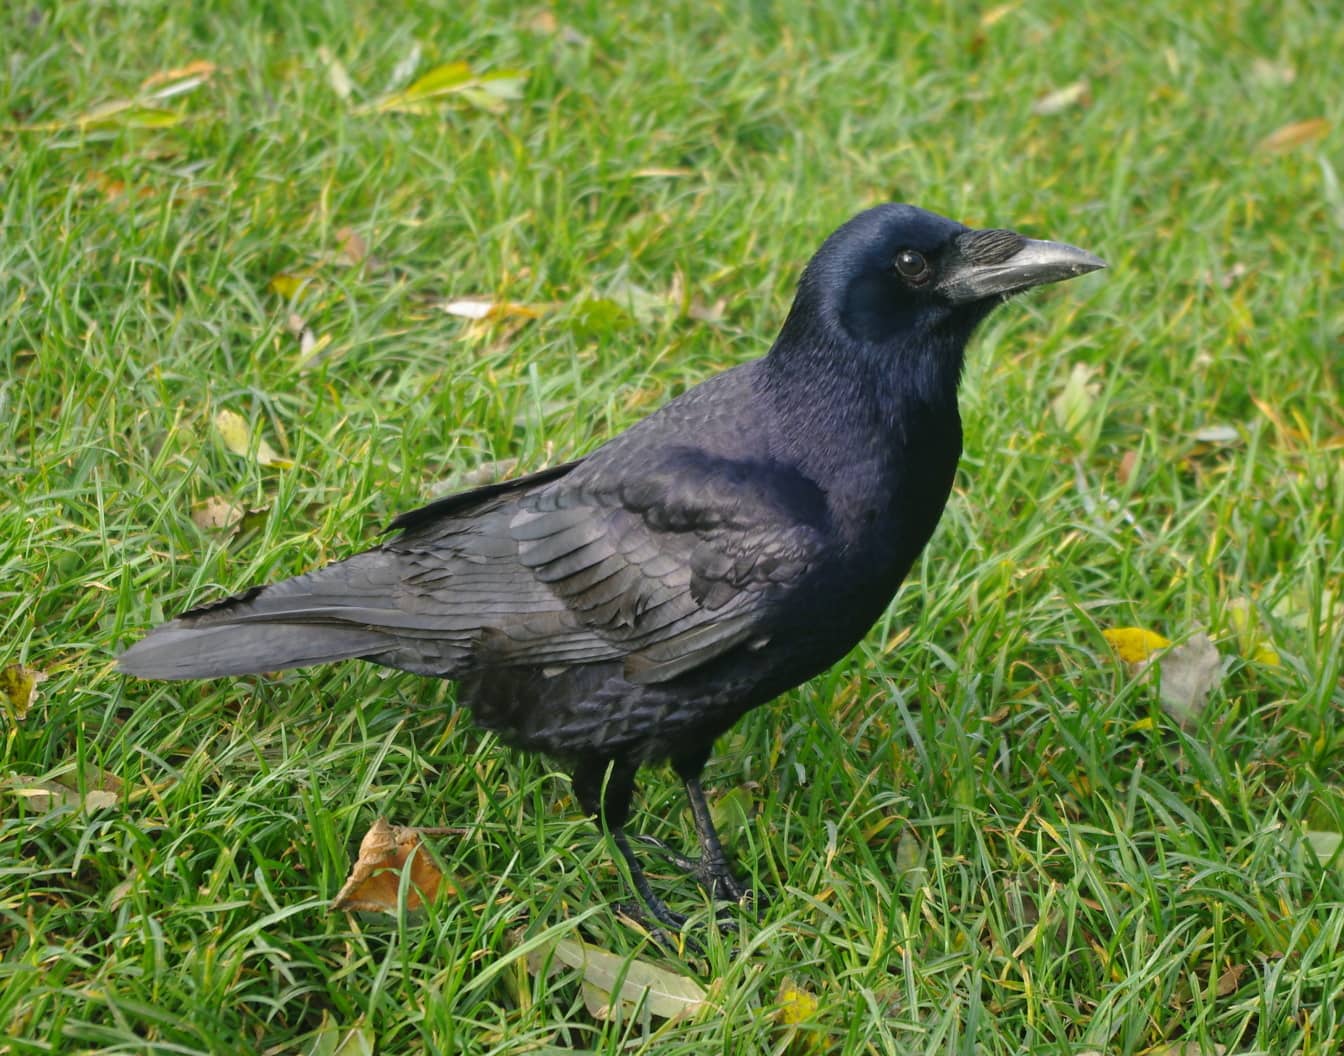 นกกาทั่วไป (Corvus corax) นกสีดําระยะใกล้บนพื้นหญ้าสีเขียว